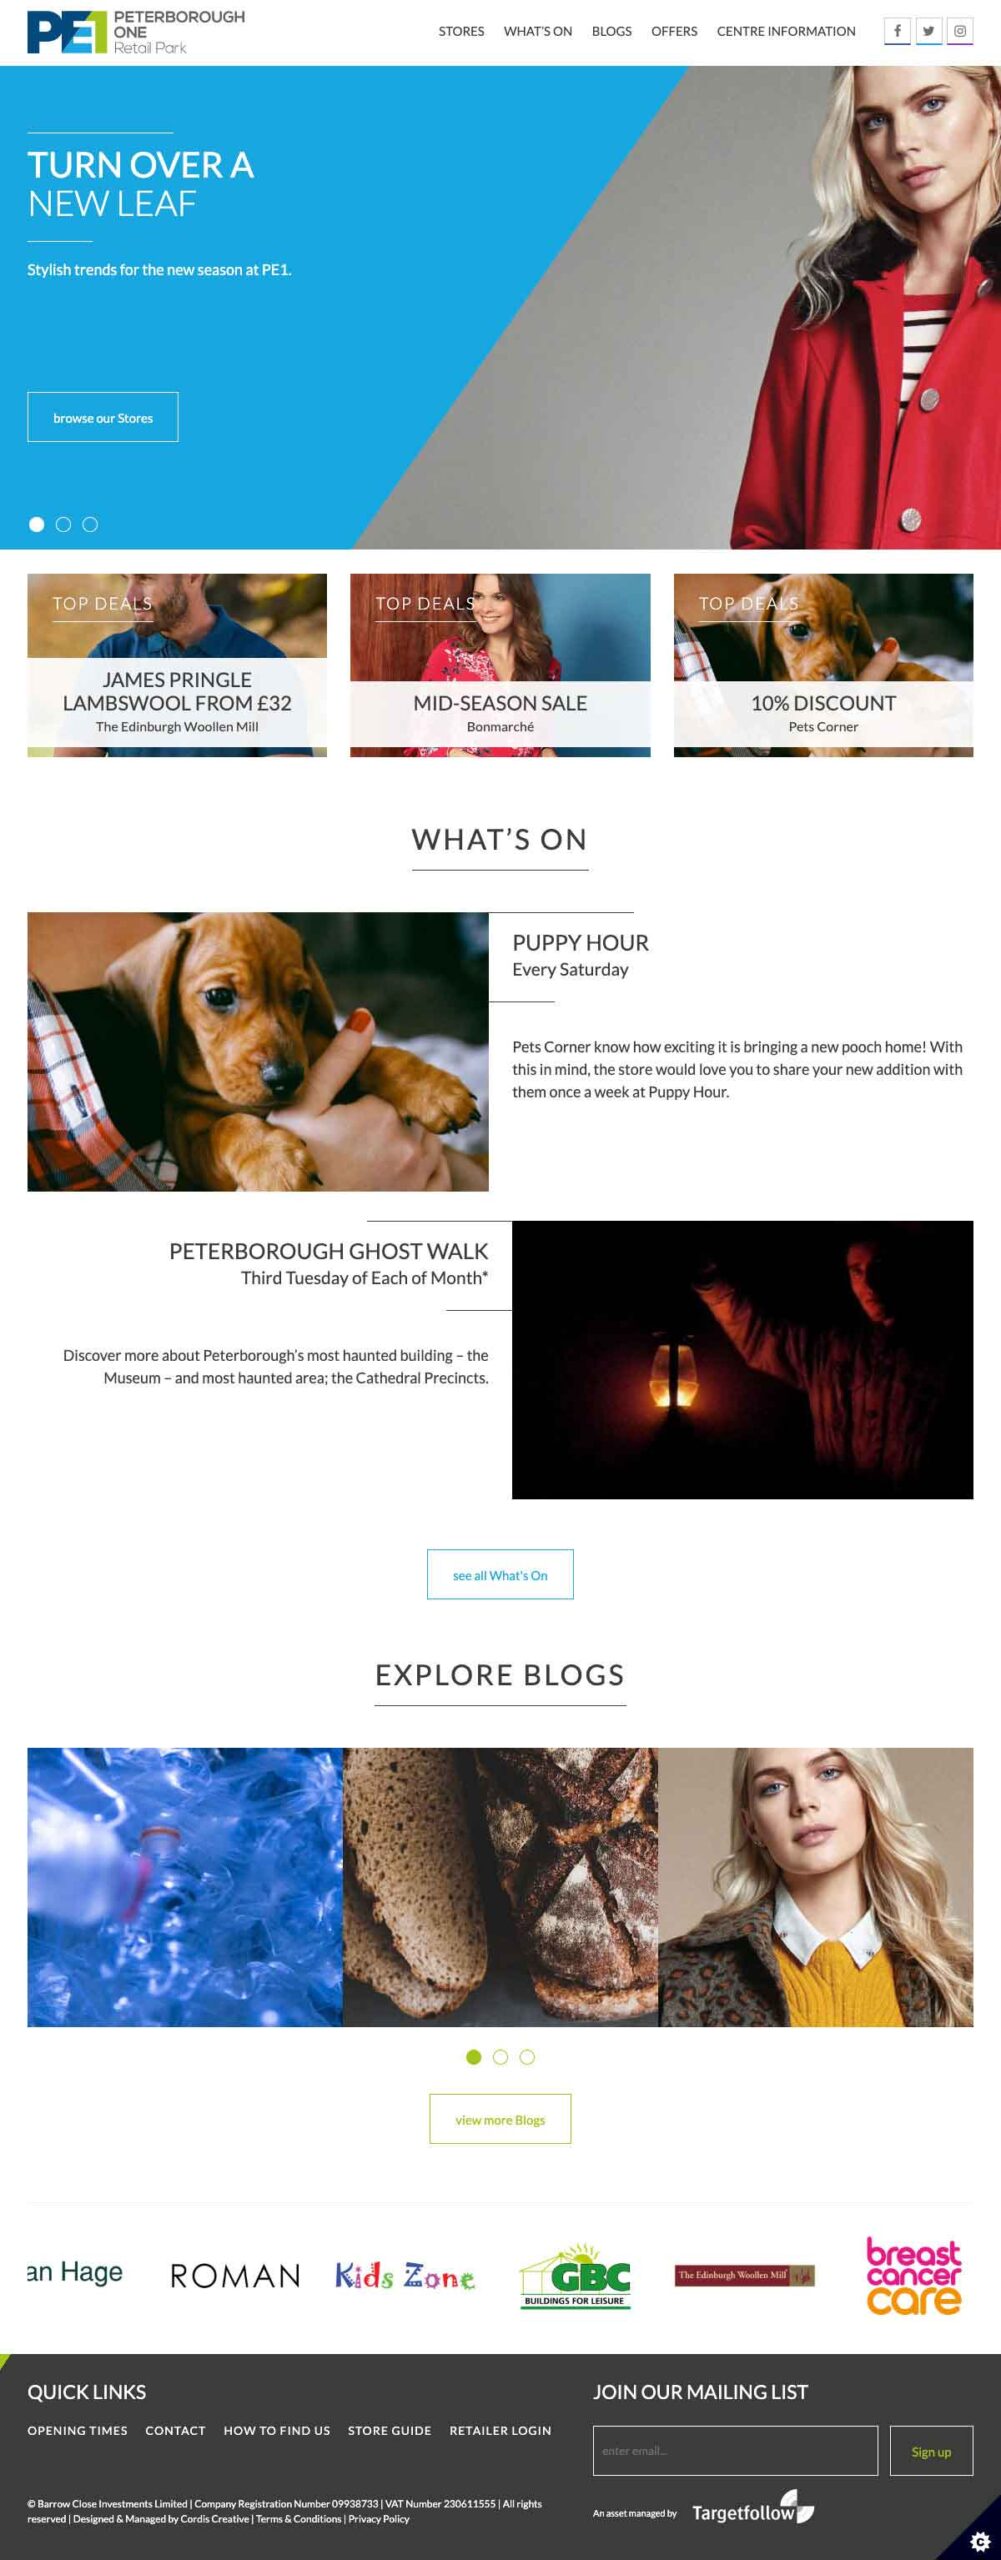 PE1s Website Homepage